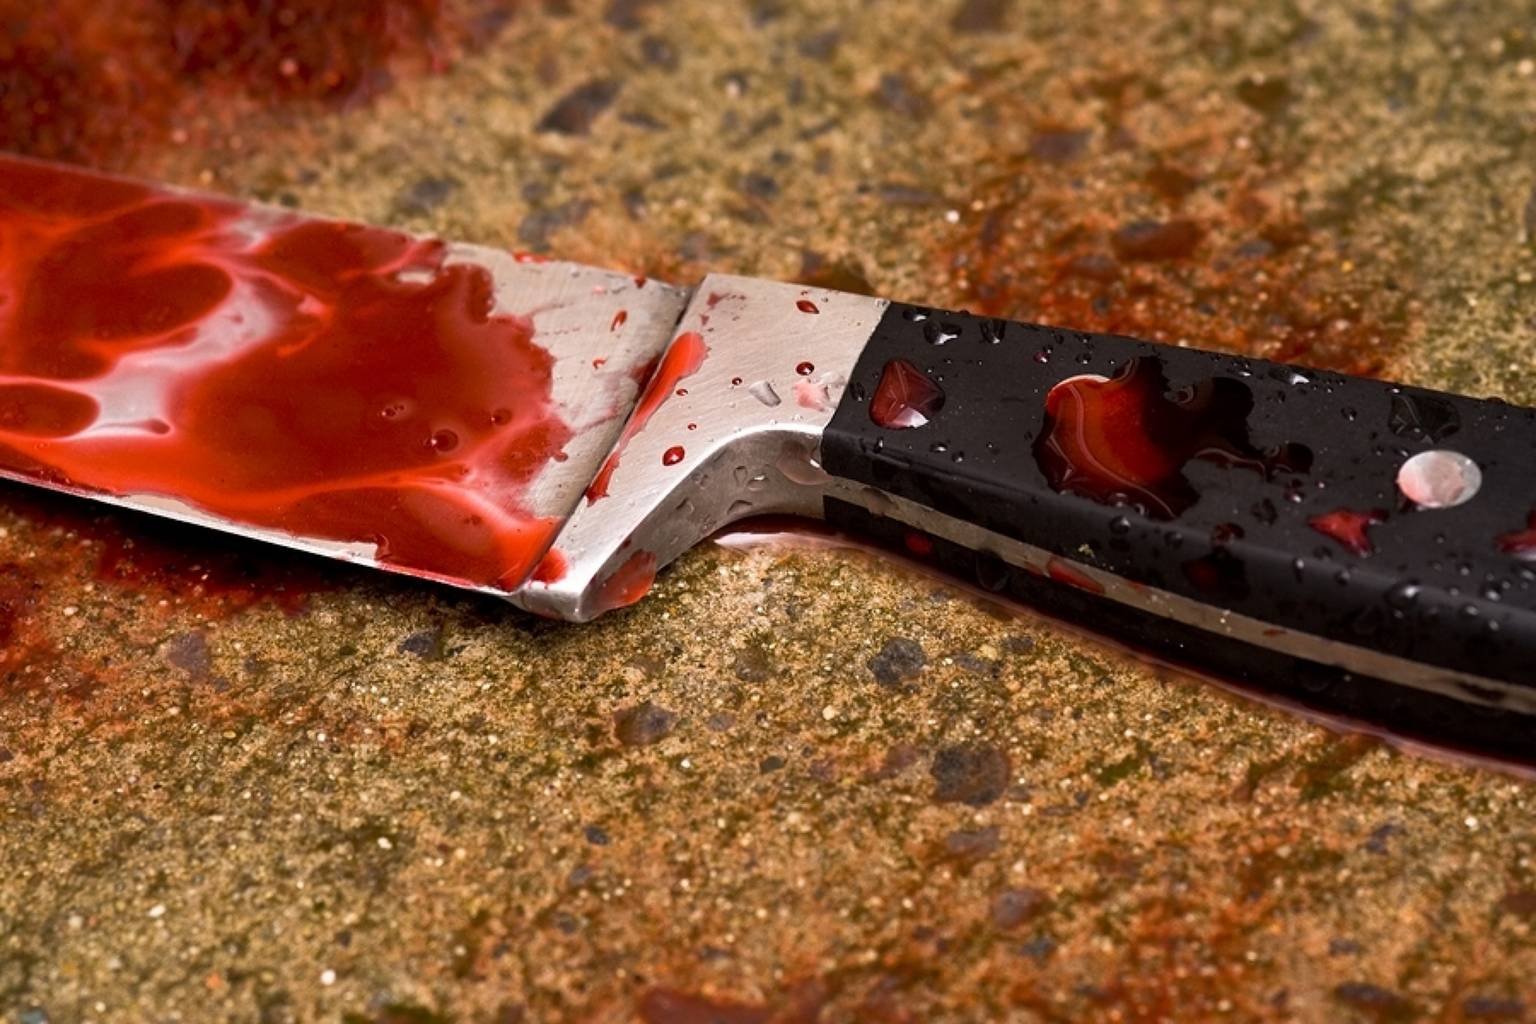 Άγρια δολοφονία στο Περιστέρι – Σκότωσε την σύντροφο του με δέκα μαχαιριές (φωτό)  (upd3)